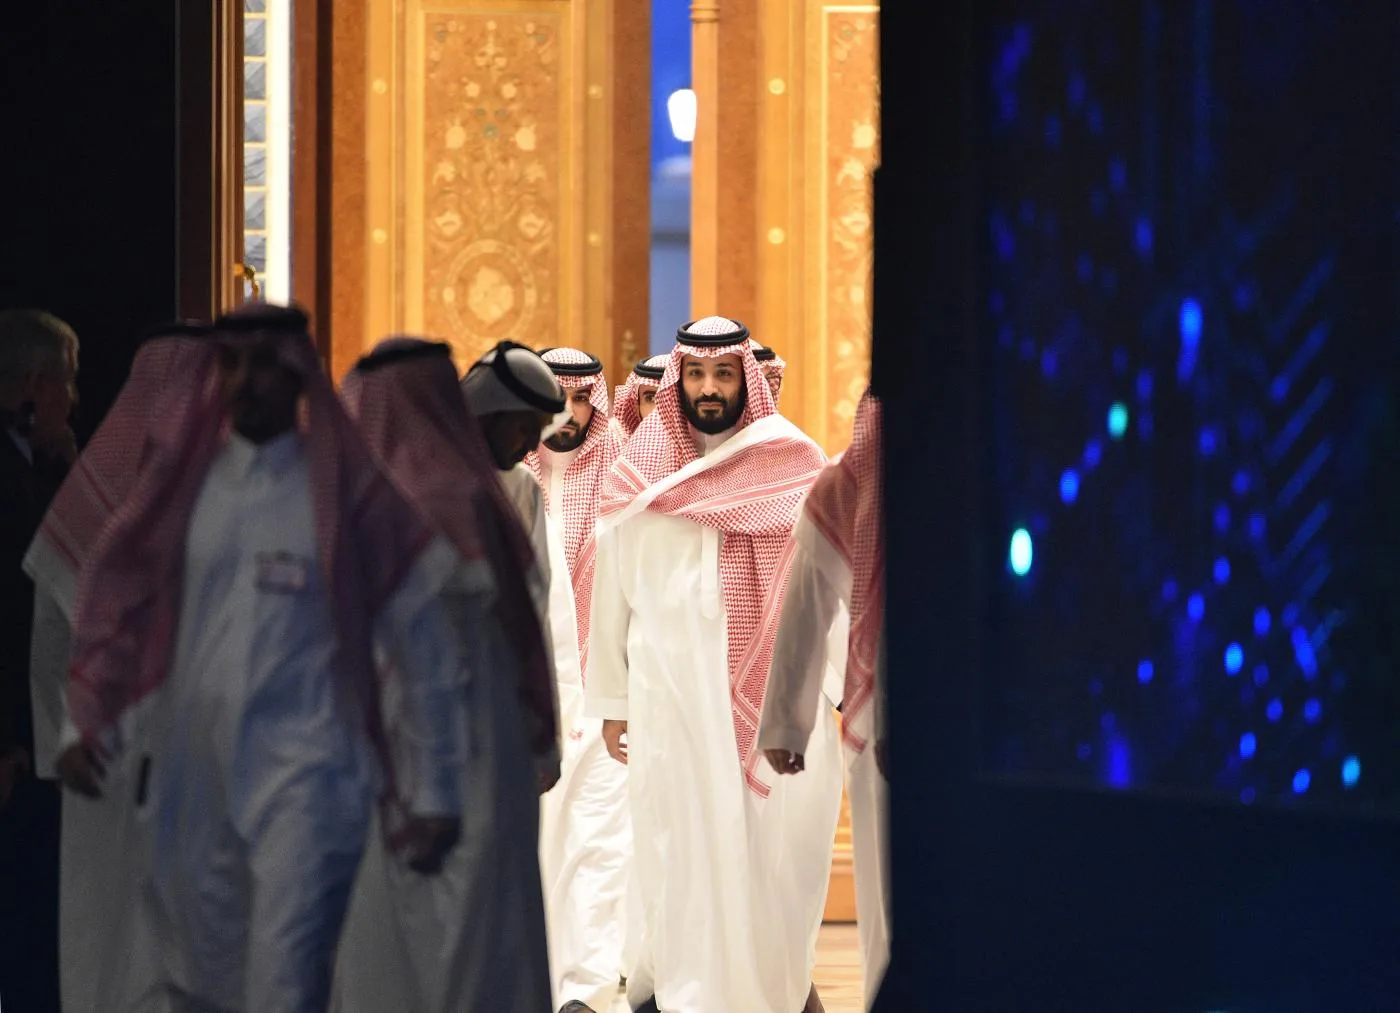 أثار ولي العهد السعودي محمد بن سلمان موجة انتقادات، بعد أن كشف تقرير صحفي عن رغبته في بناء أهرامات خاصة بالسعودية تضاهي تلك الموجودة في مصر.